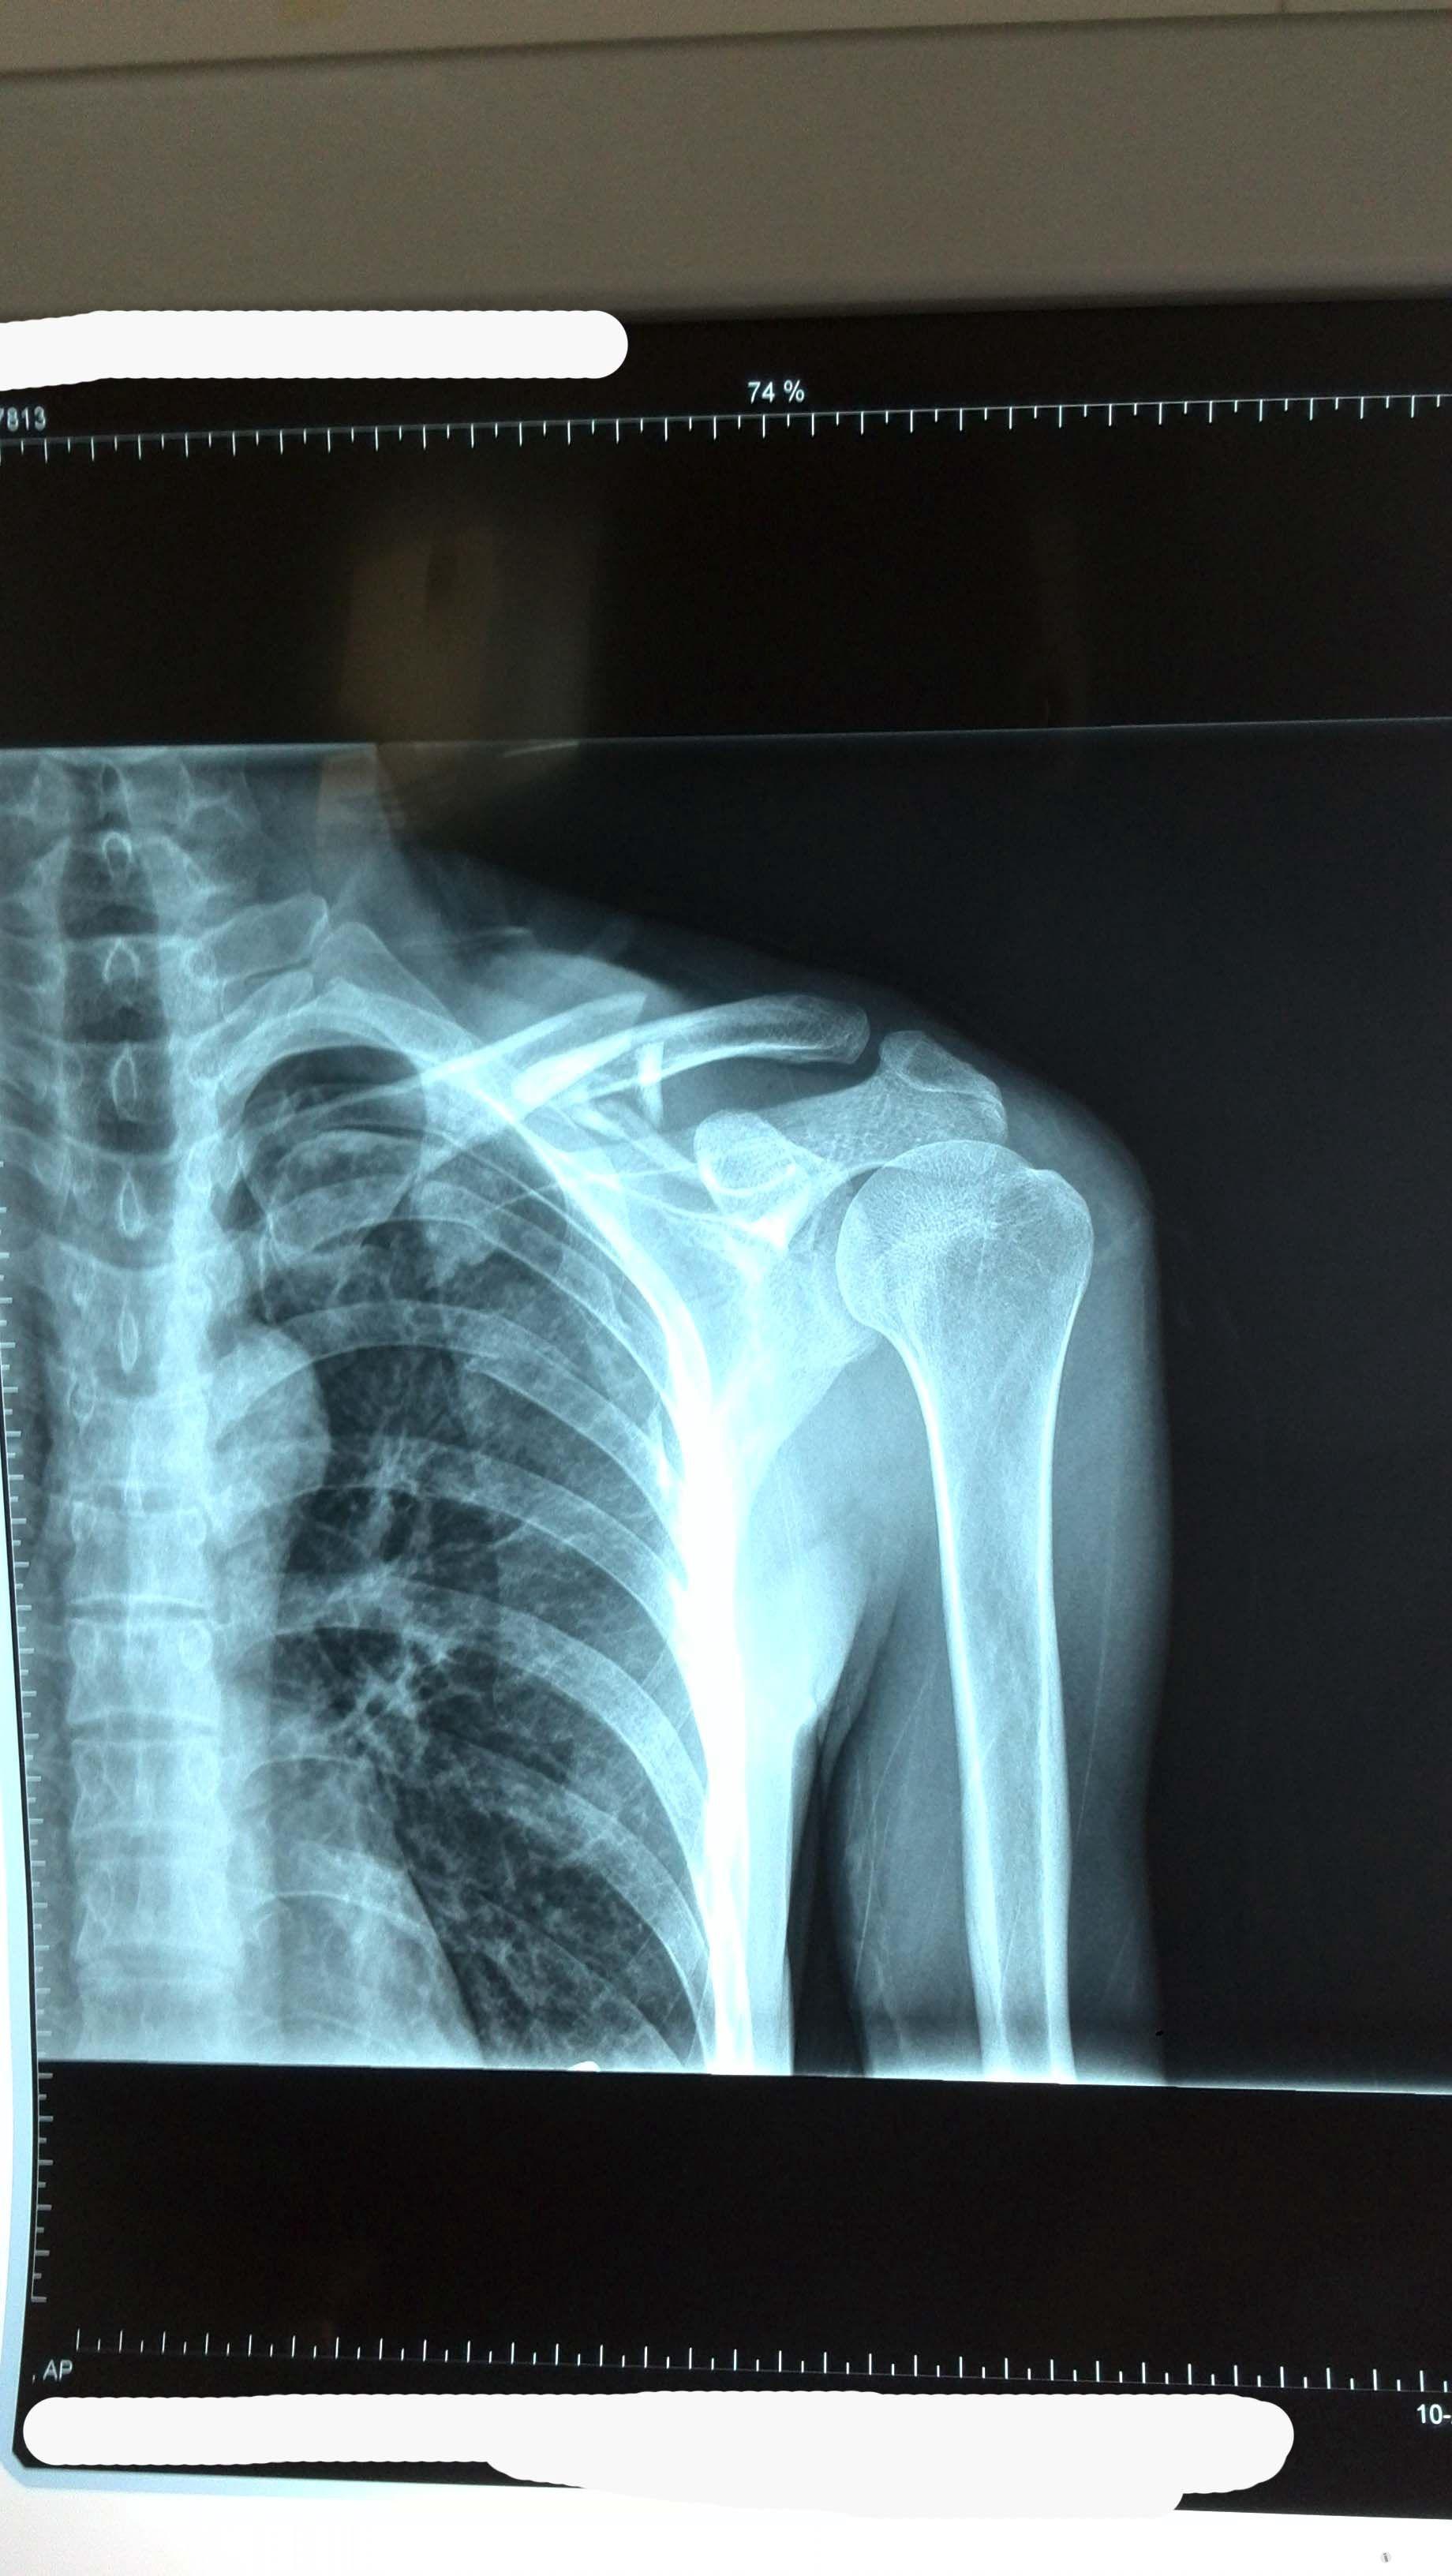 锁骨骨折术后发现肩锁关节脱位已经更新术后了